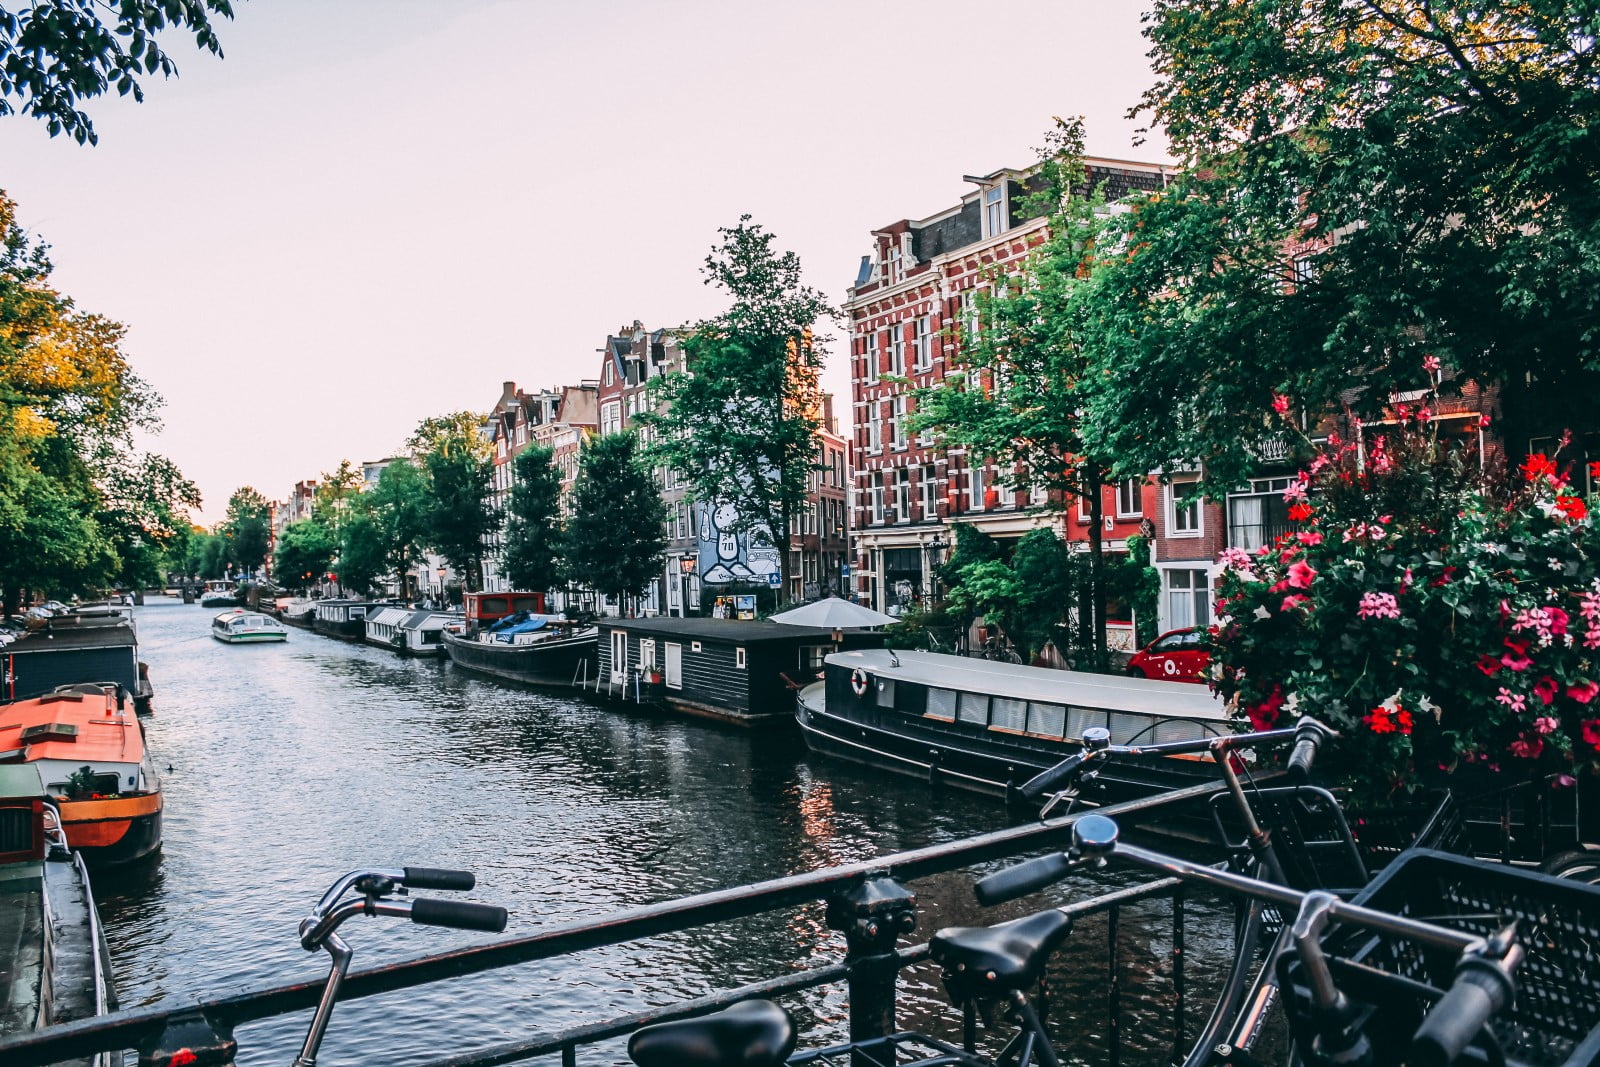 Boek een boottocht in Amsterdam en ontdek haar rijke geschiedenis